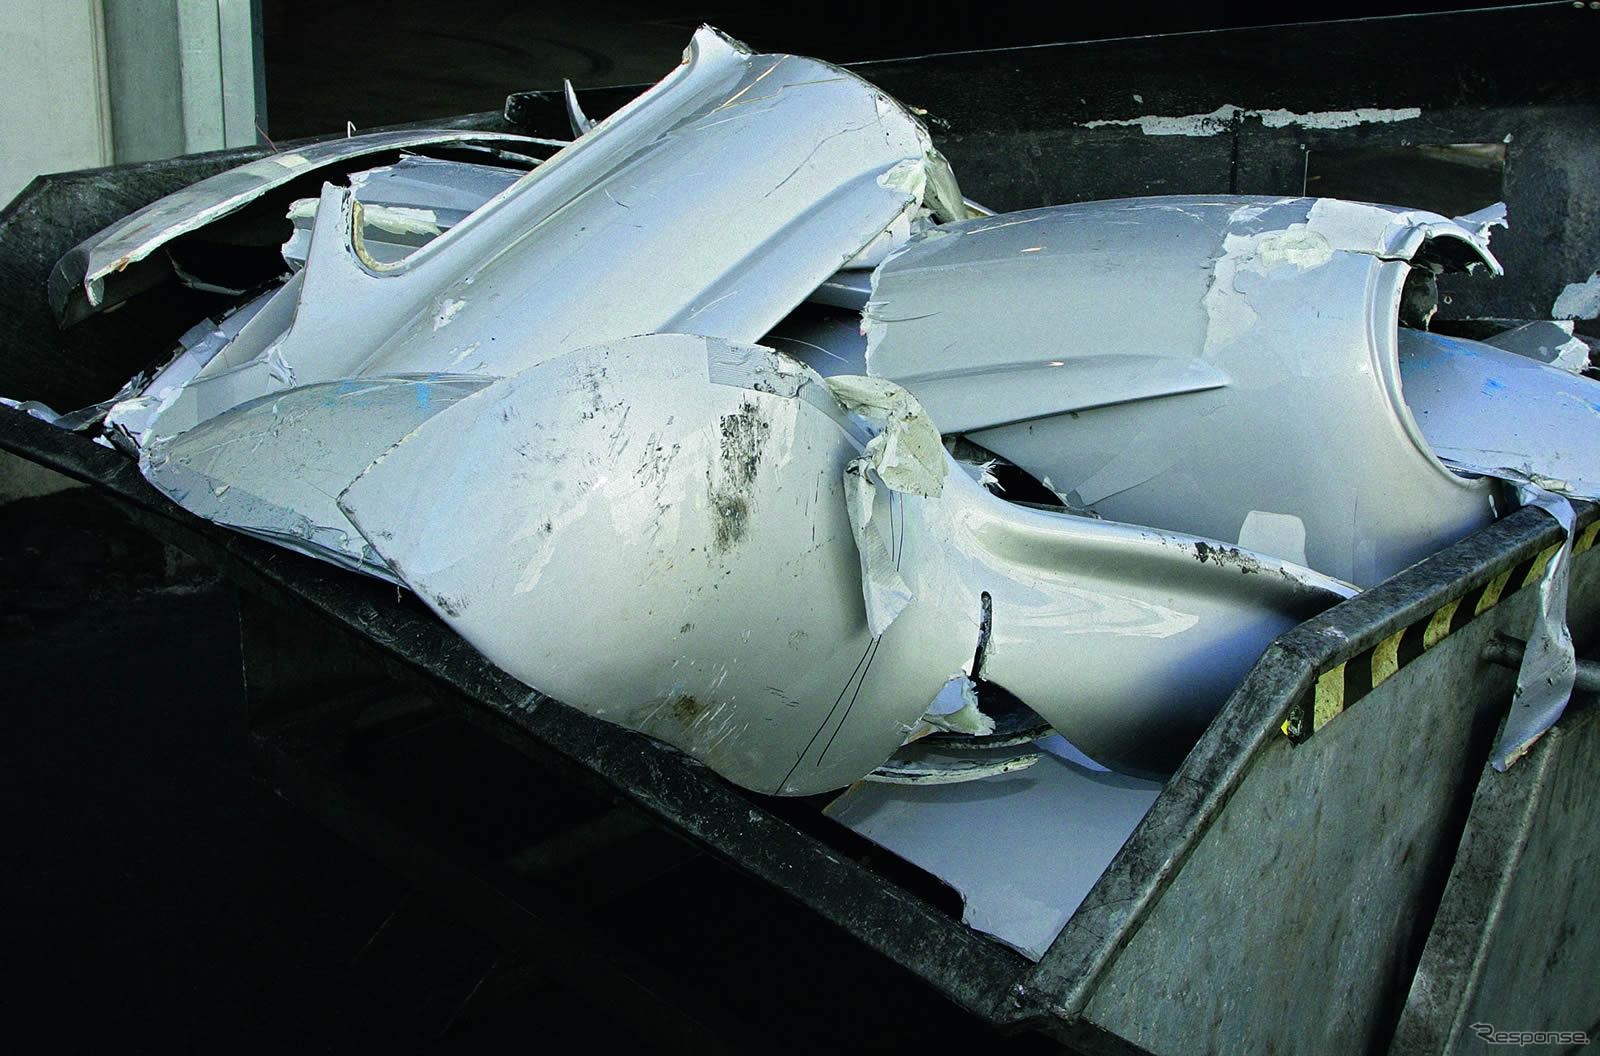 ダイムラーが公表したメルセデスベンツ300SLレプリカが破壊される様子